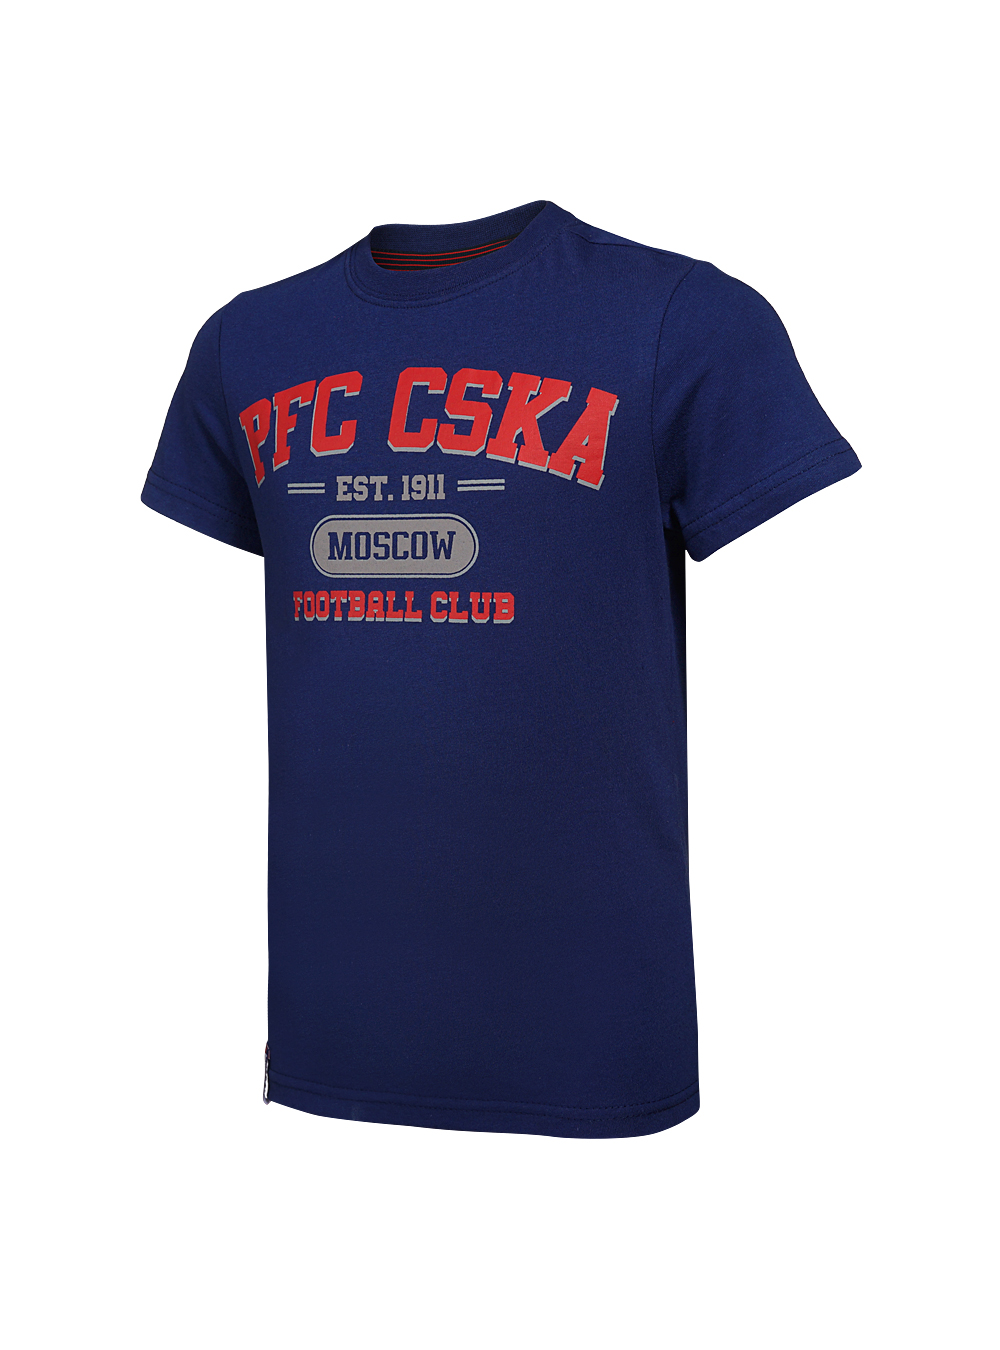 Футболка детская  PFC CSKA Moscow синяя (152) ПФК ЦСКА CSK18031 - фото 1